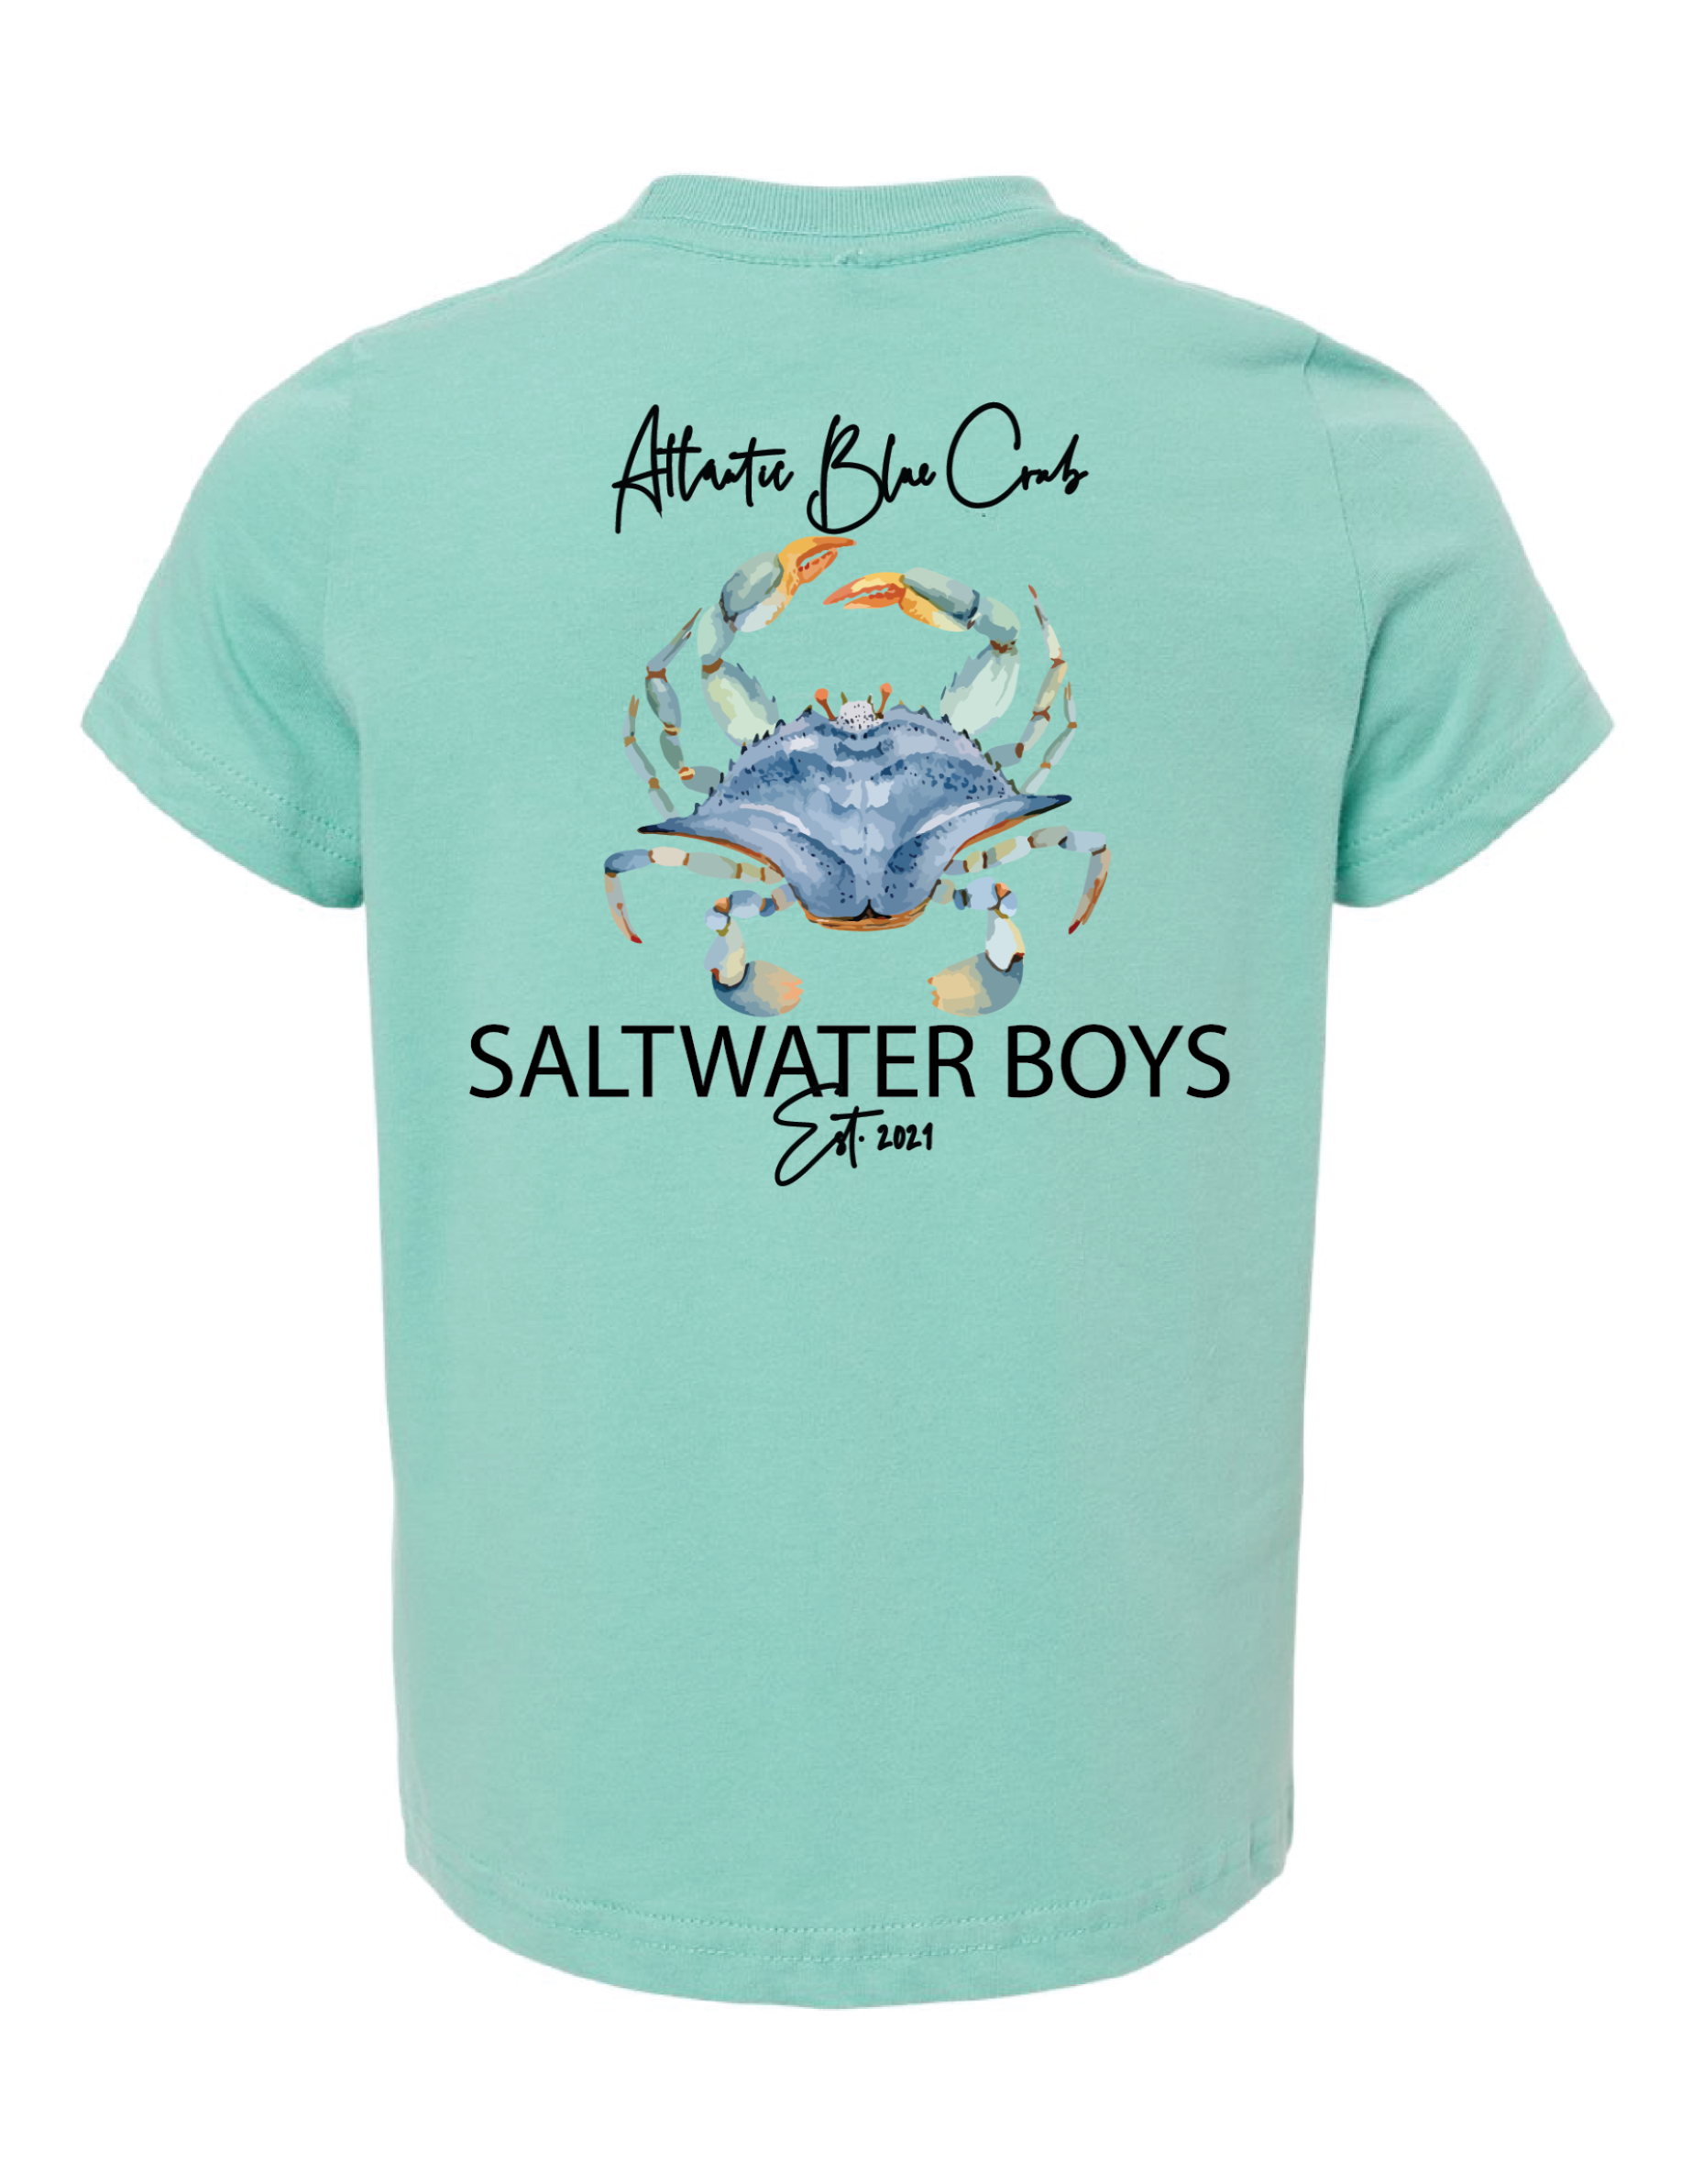 Atlantic Crab Short Sleeve Tee in Saltwater